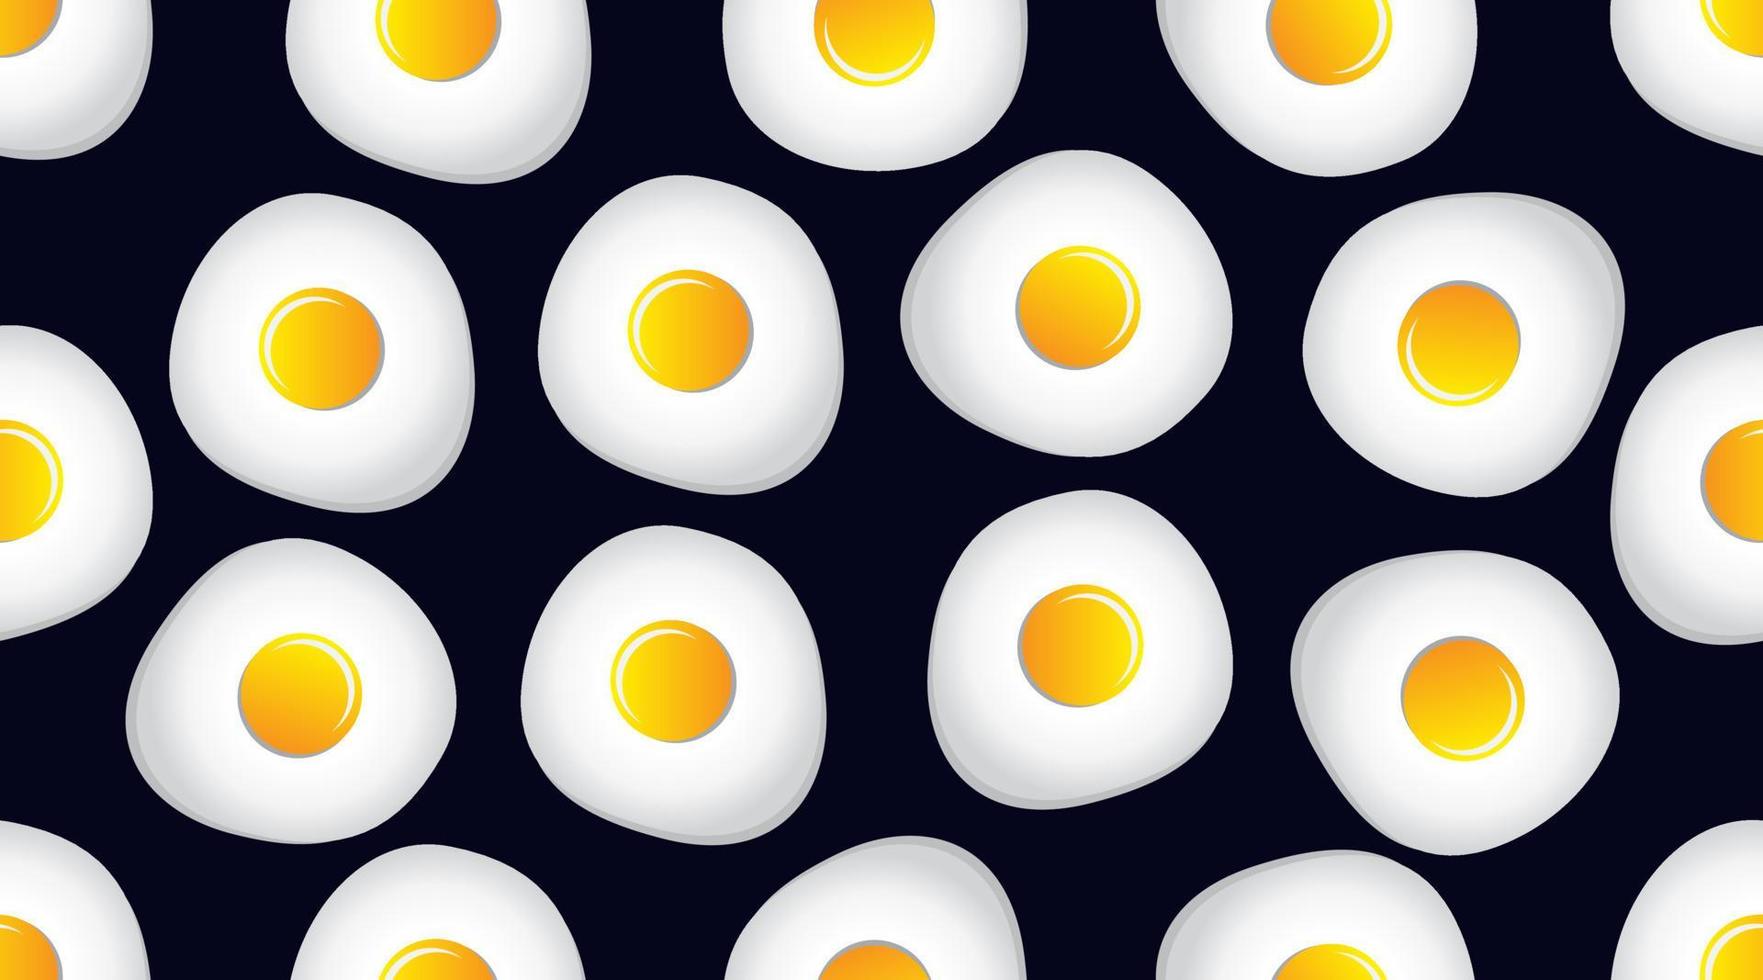 padrão sem emenda de comida com ovo frito em fundo azul escuro. ornamento para têxteis e embrulho. ilustração vetorial. vetor